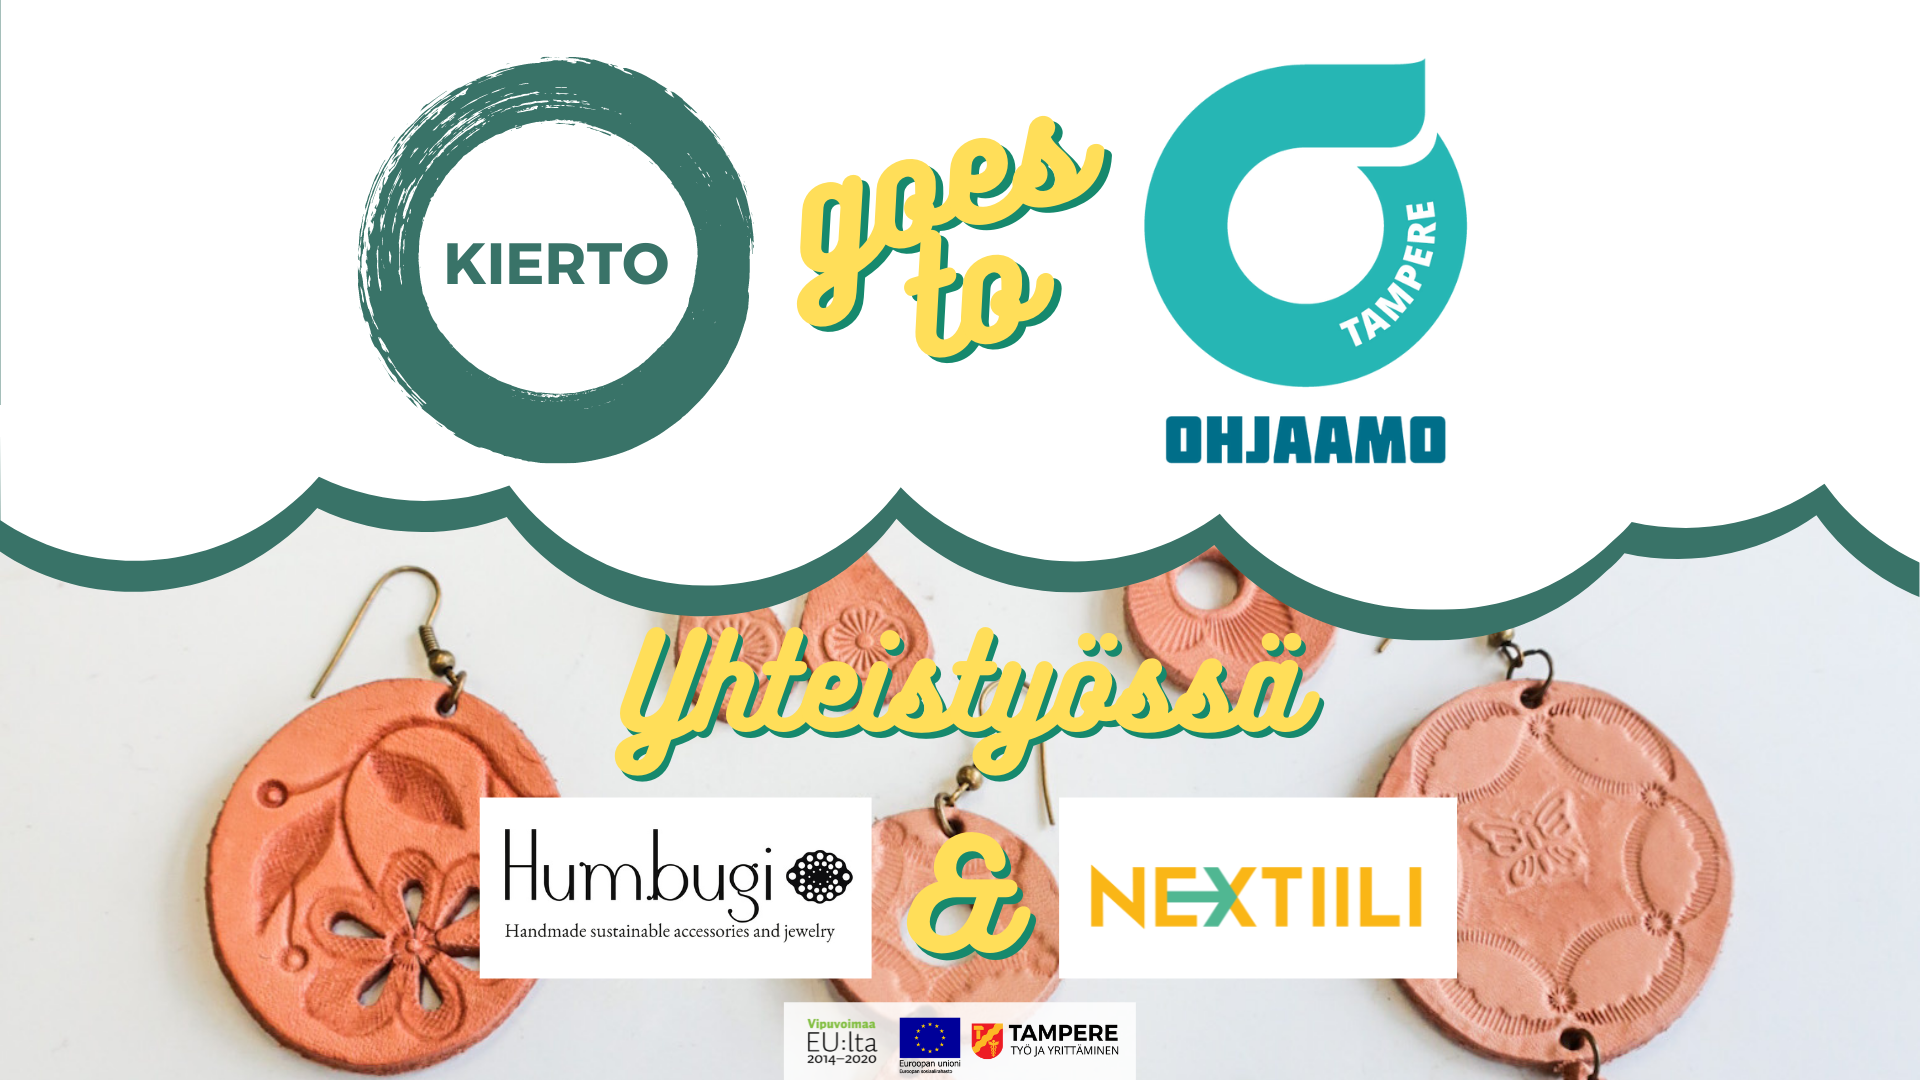 Yläosassa KIERTO-hankkeen ja Ohjaamon logot, joiden välissä Goes to -teksti. Alaosassa nahasta valmistettuja korvakoruja, joiden päällä Humbugin ja Nextiilin logot.